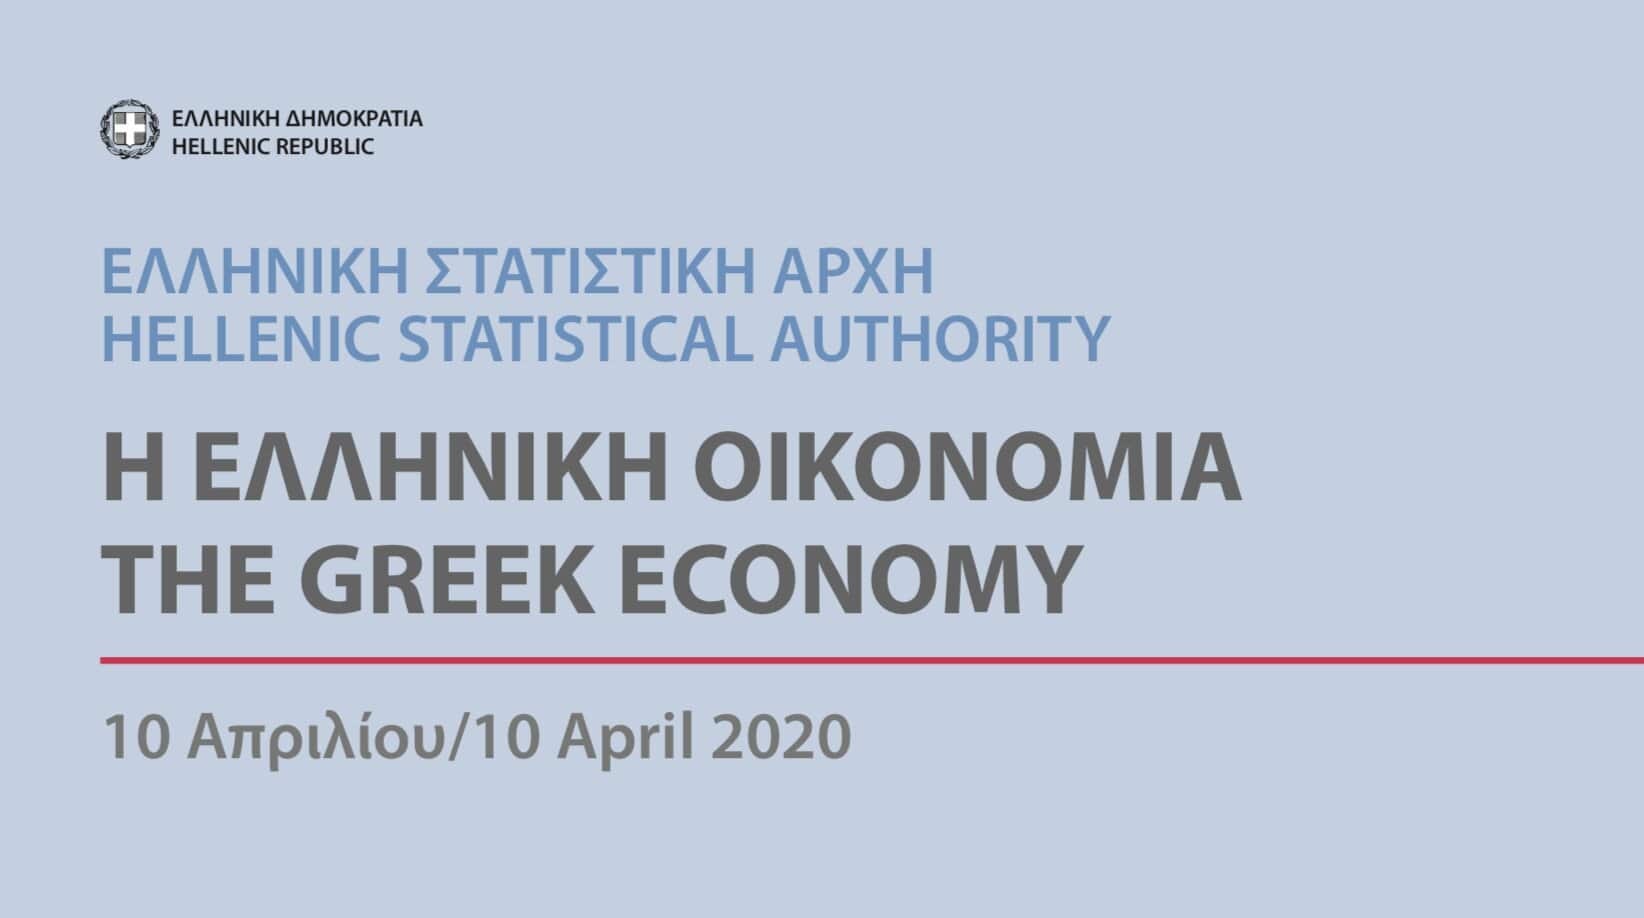 Η ΕΛΛΗΝΙΚΗ ΟΙΚΟΝΟΜΙΑ 2020 – THE GREEK ECONOMY 2020